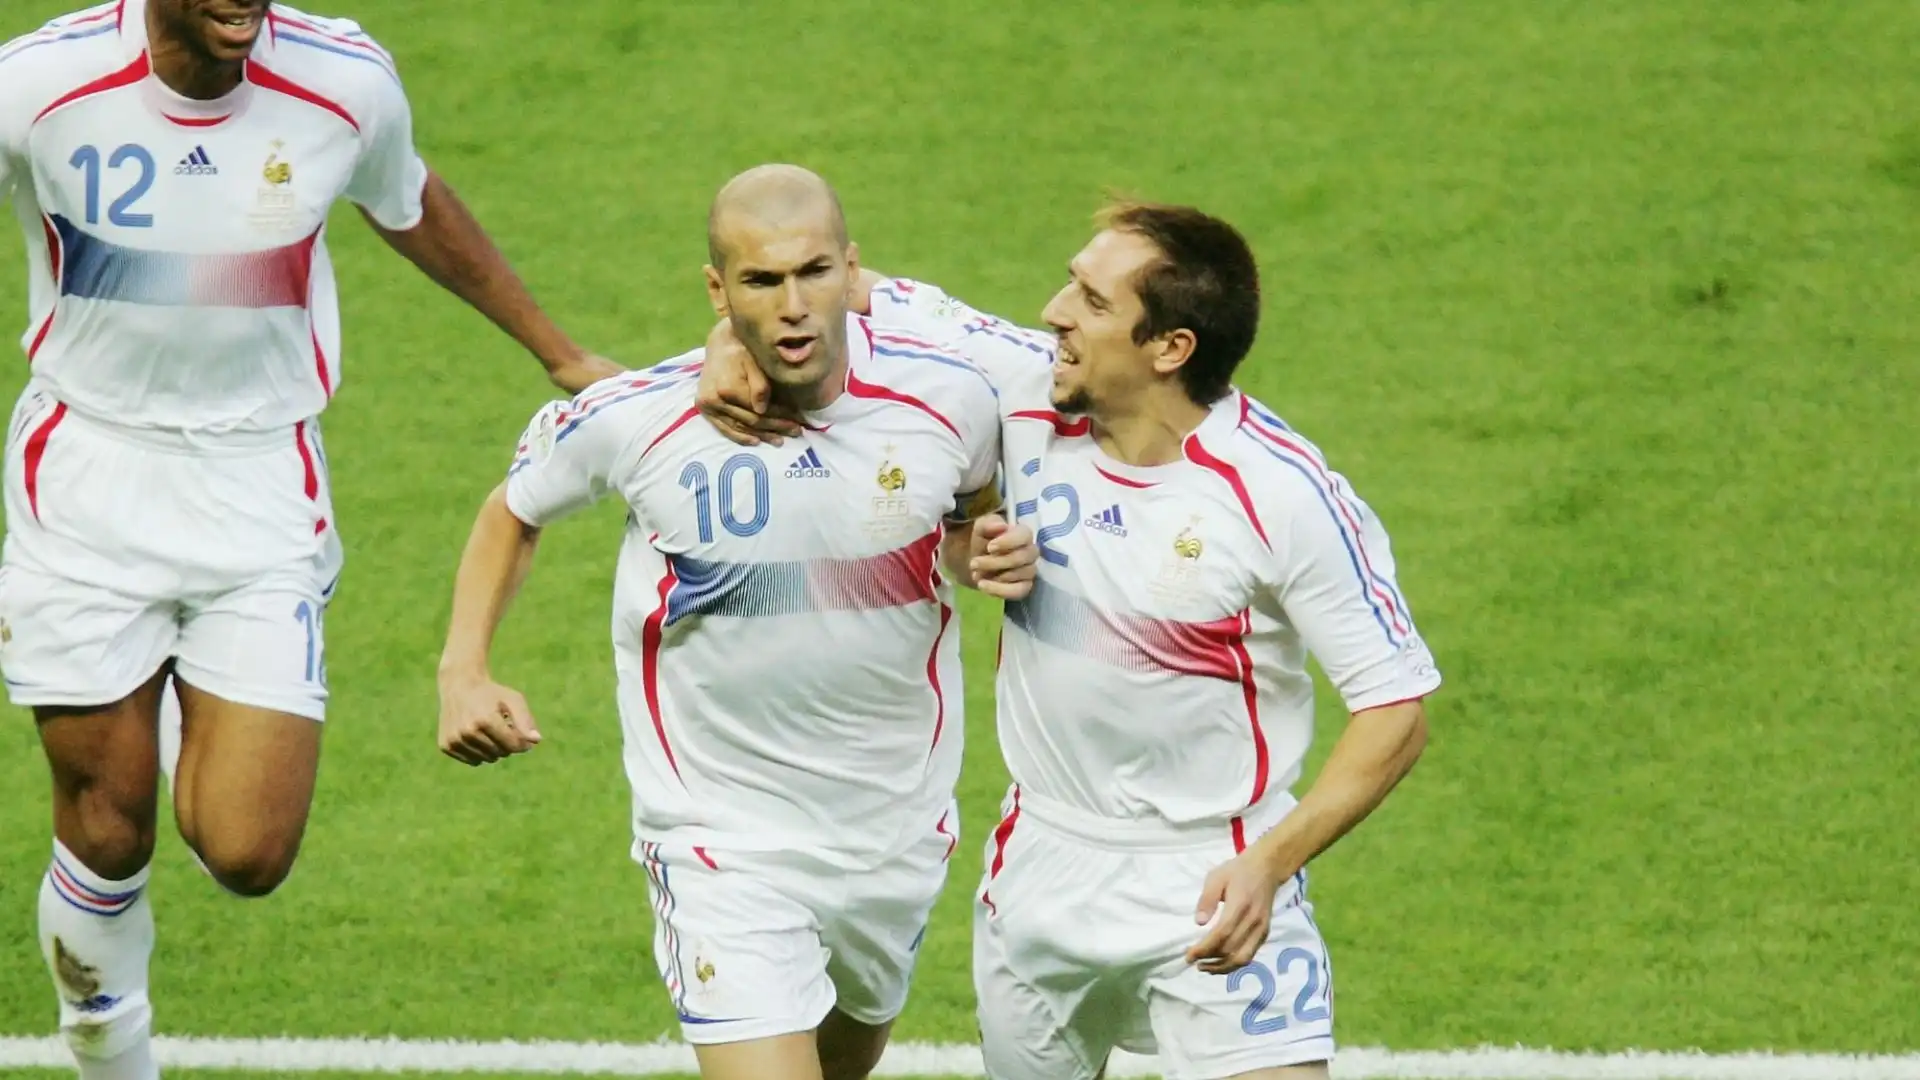 L'accoppiata dei sogni Zidane-Ribery sembra una soluzione un po' avventurosa per il Bayern, ma non è totalmente da escludere